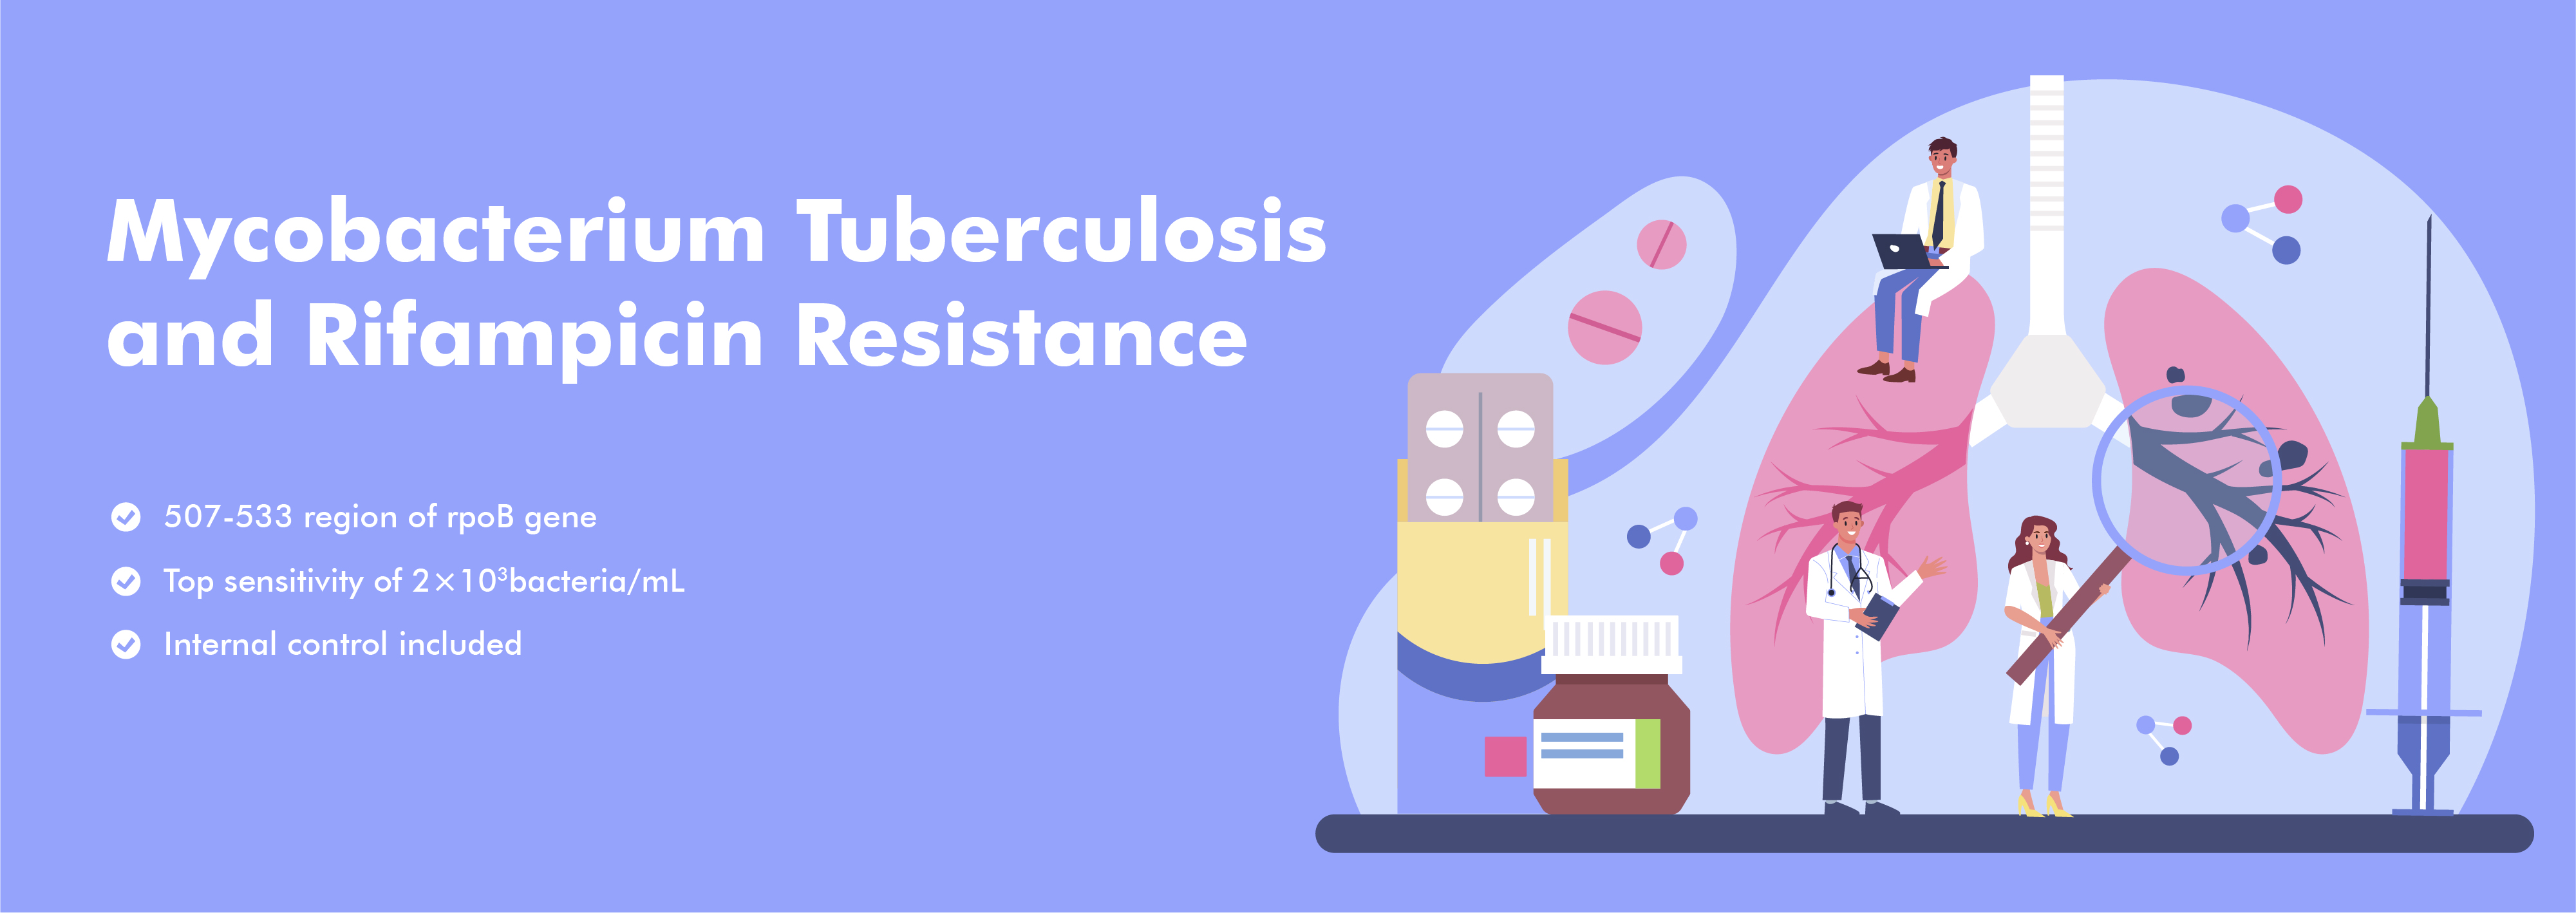 Mycobacterium Tuberculosis Atsparumas nukleino rūgštims ir rifampicinui